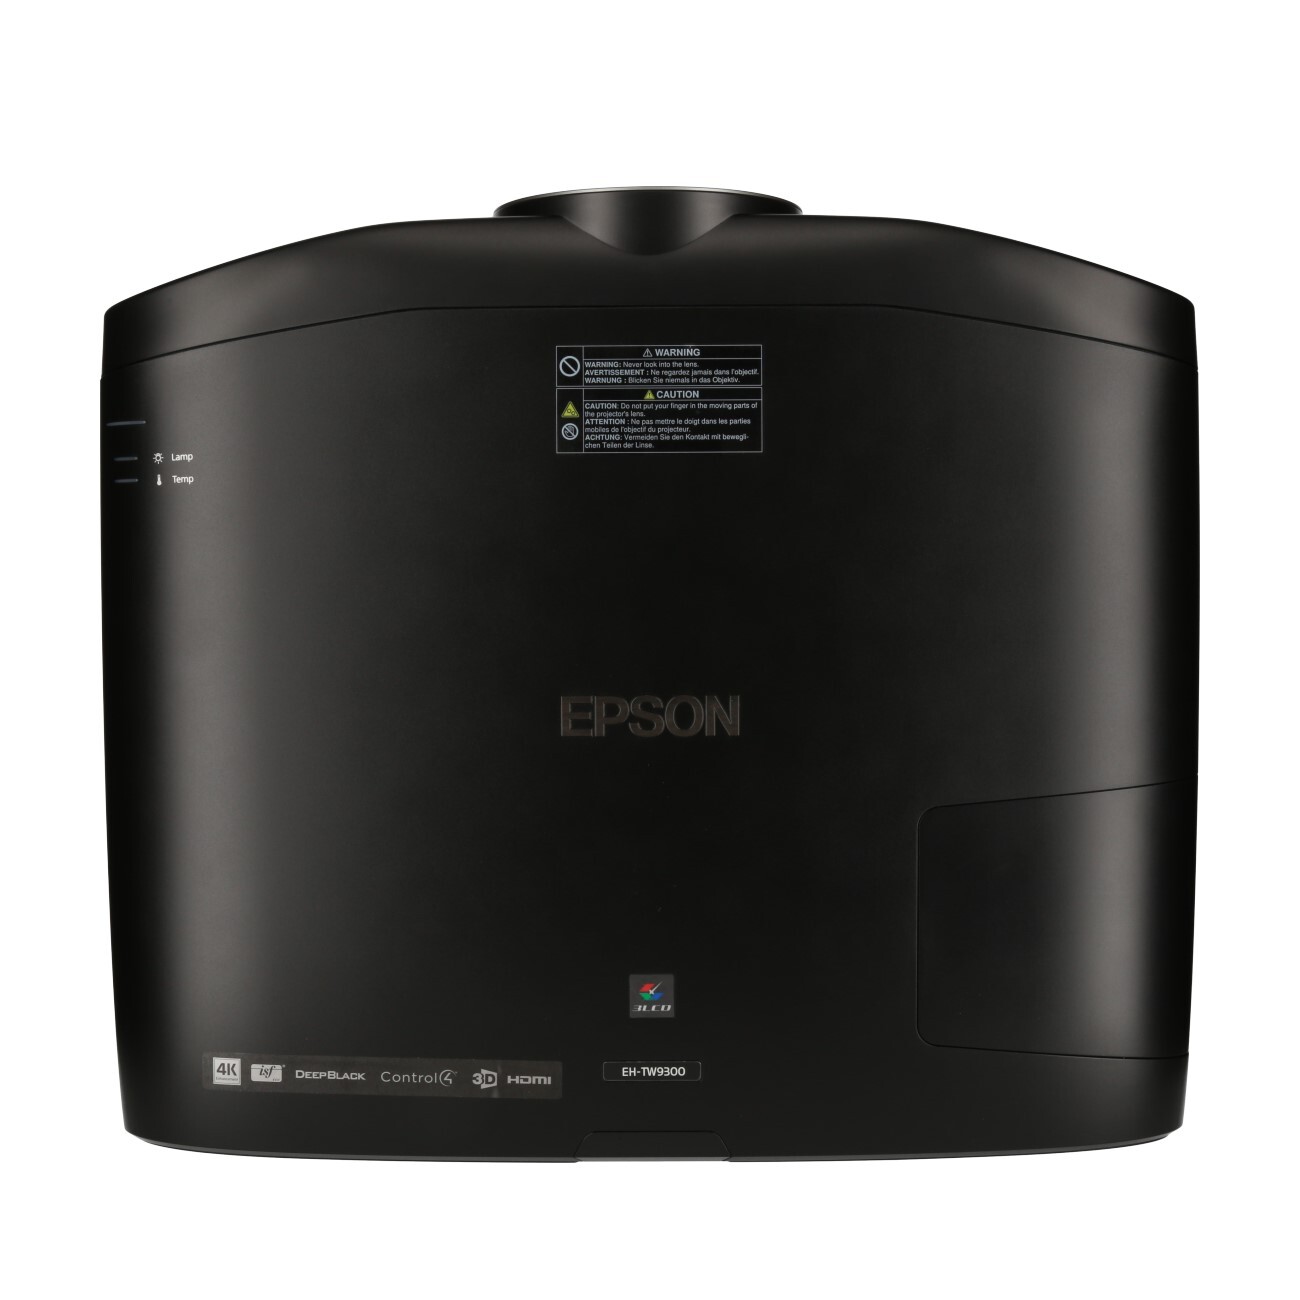 Epson-EH-TW9300